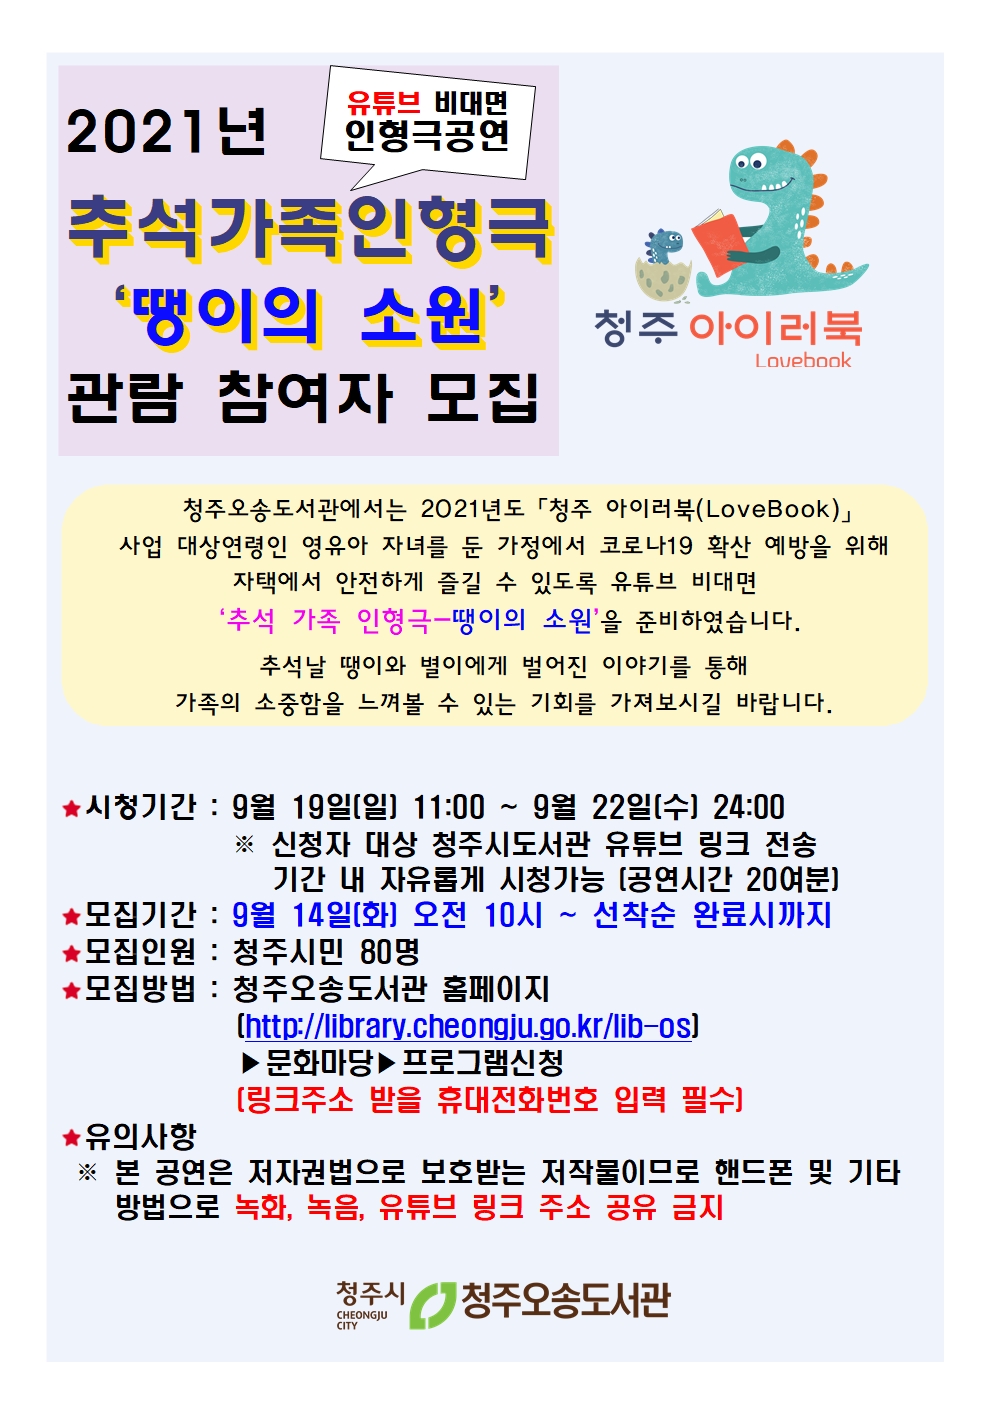 「청주 아이러북(LoveBook)」[유튜브비대면]추석 가족 인형극 "땡이의소원" 참여자 모집